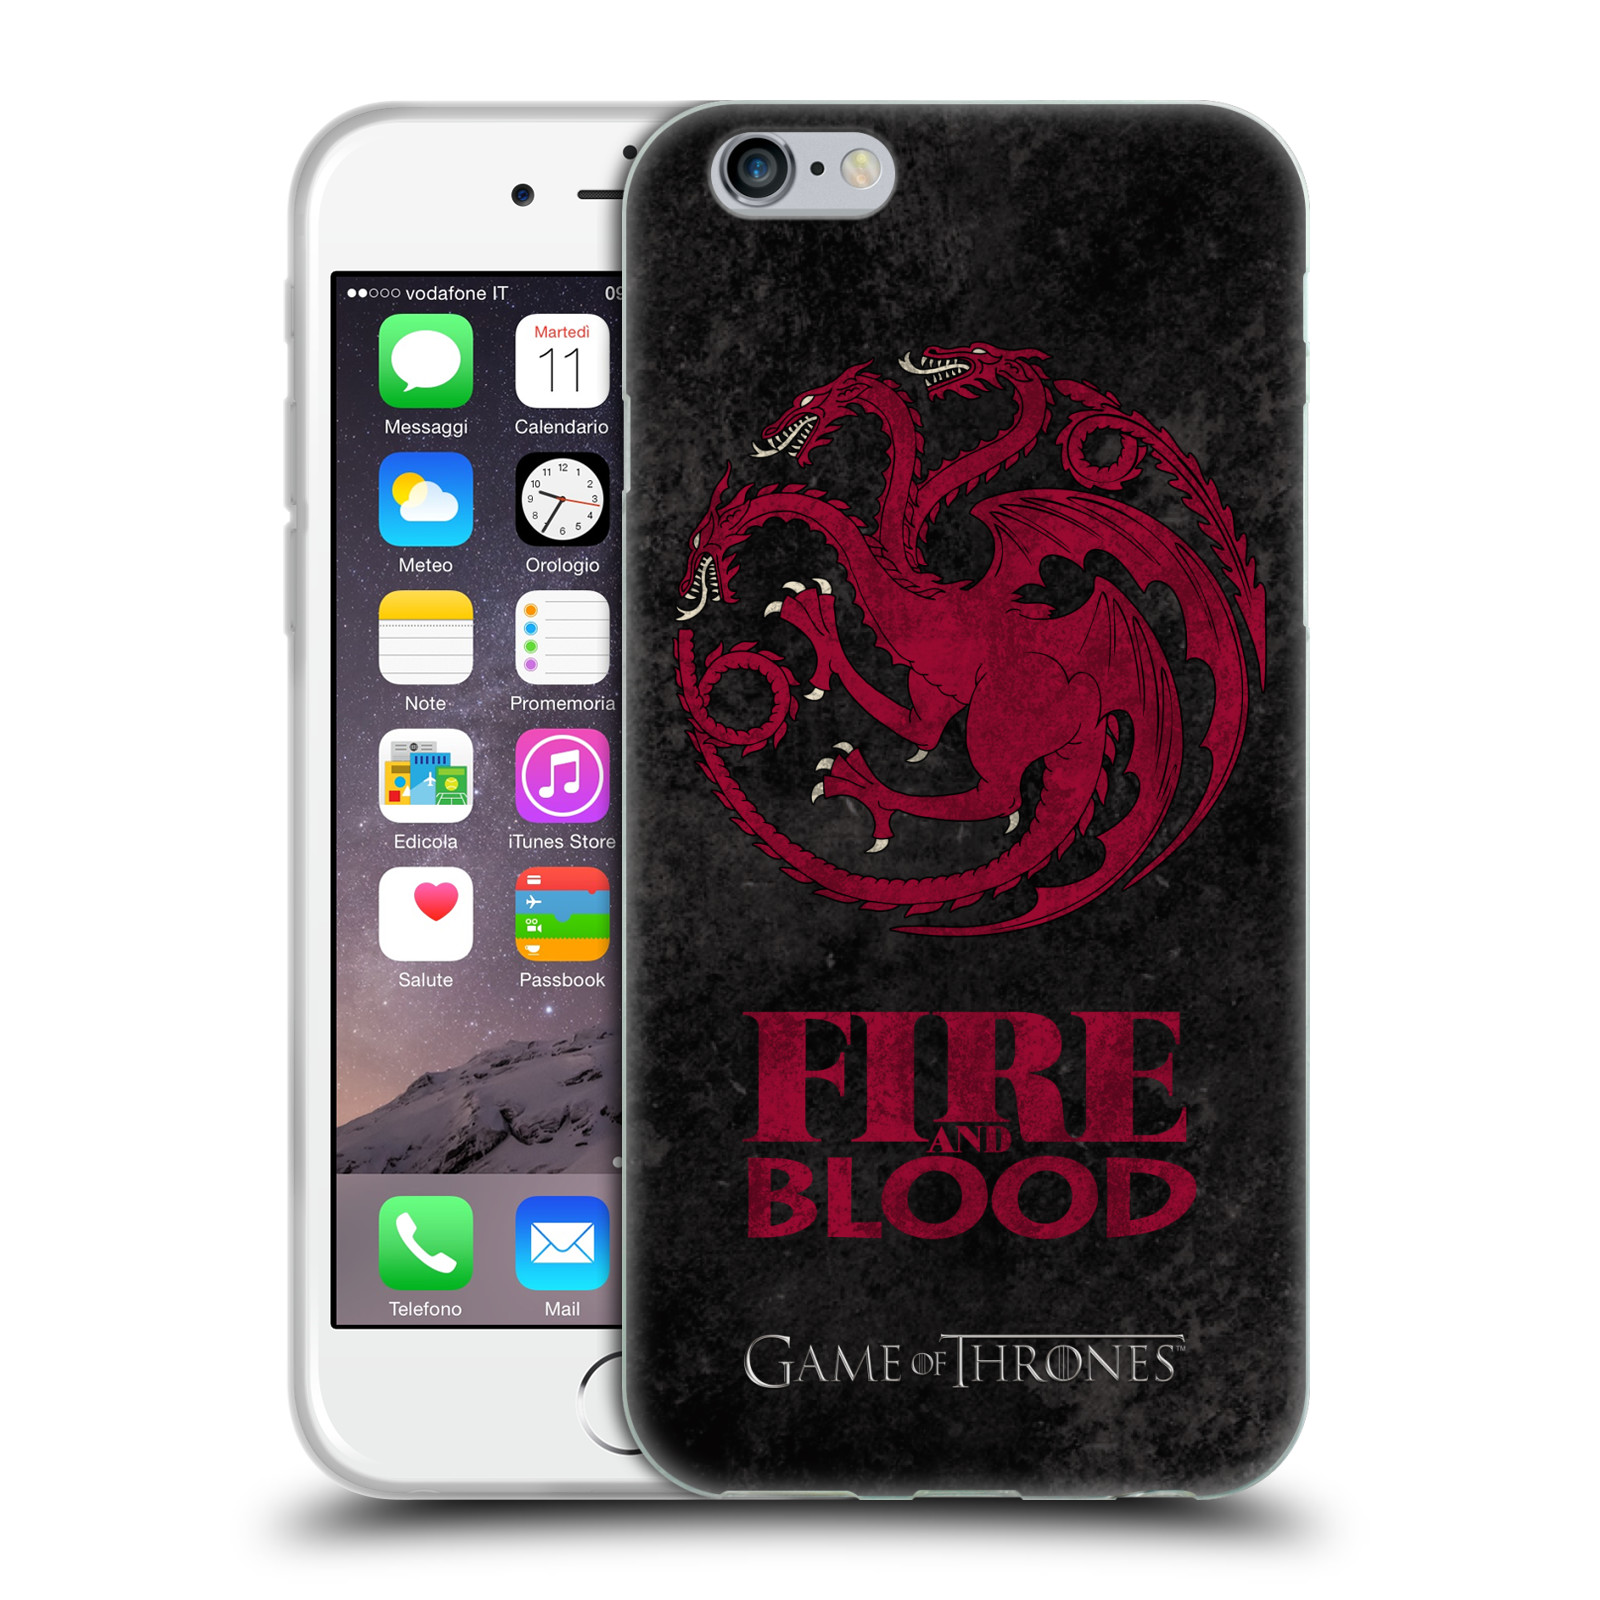 Silikonové pouzdro na mobil Apple iPhone 6 HEAD CASE Hra o trůny - Sigils Targaryen - Fire and Blood (Silikonový kryt či obal na mobilní telefon s licencovaným motivem Hra o trůny - Game Of Thrones pro Apple iPhone 6)